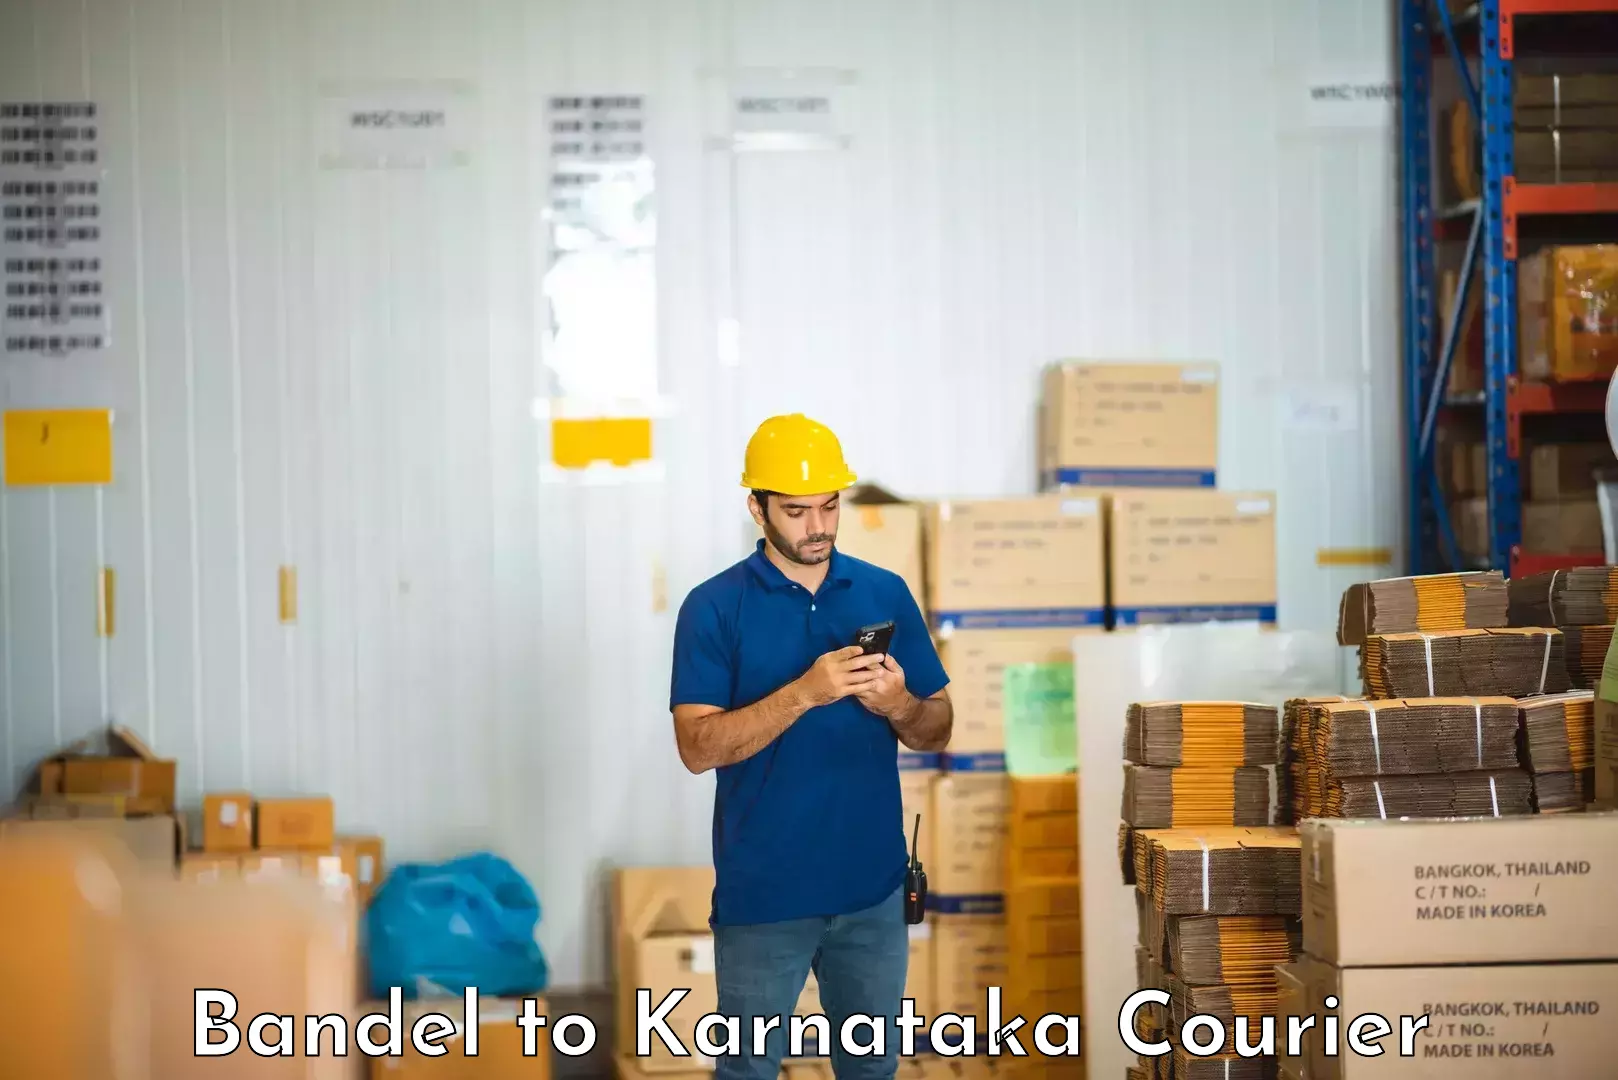 Full-service furniture transport Bandel to Karnataka